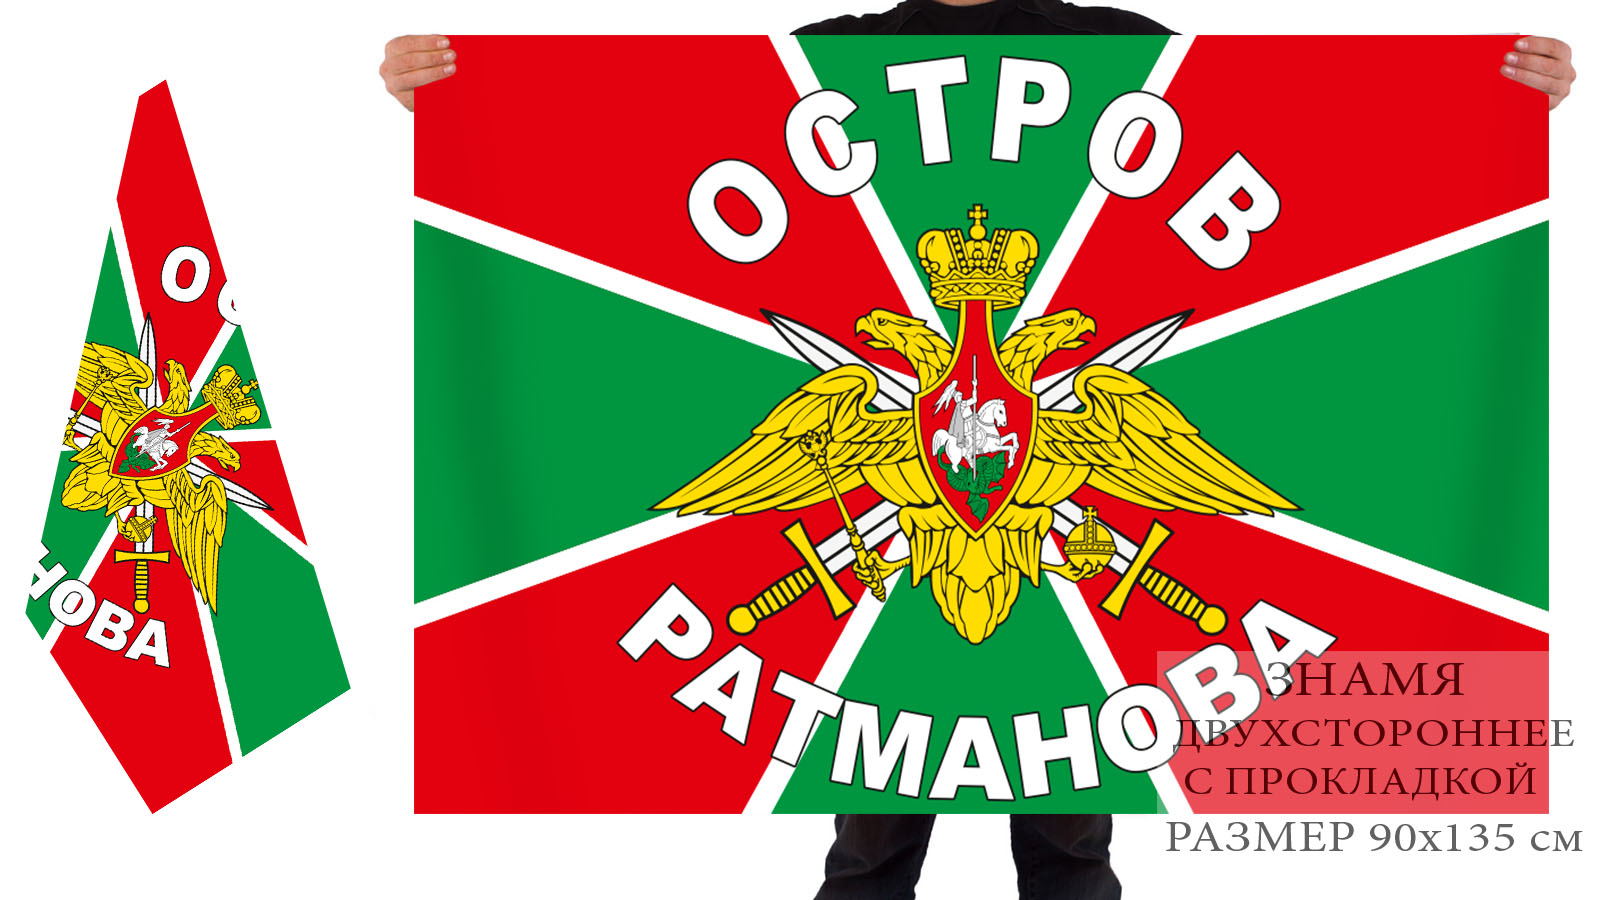 Купить в Москве флаг Погранвойска, остров Ратманова